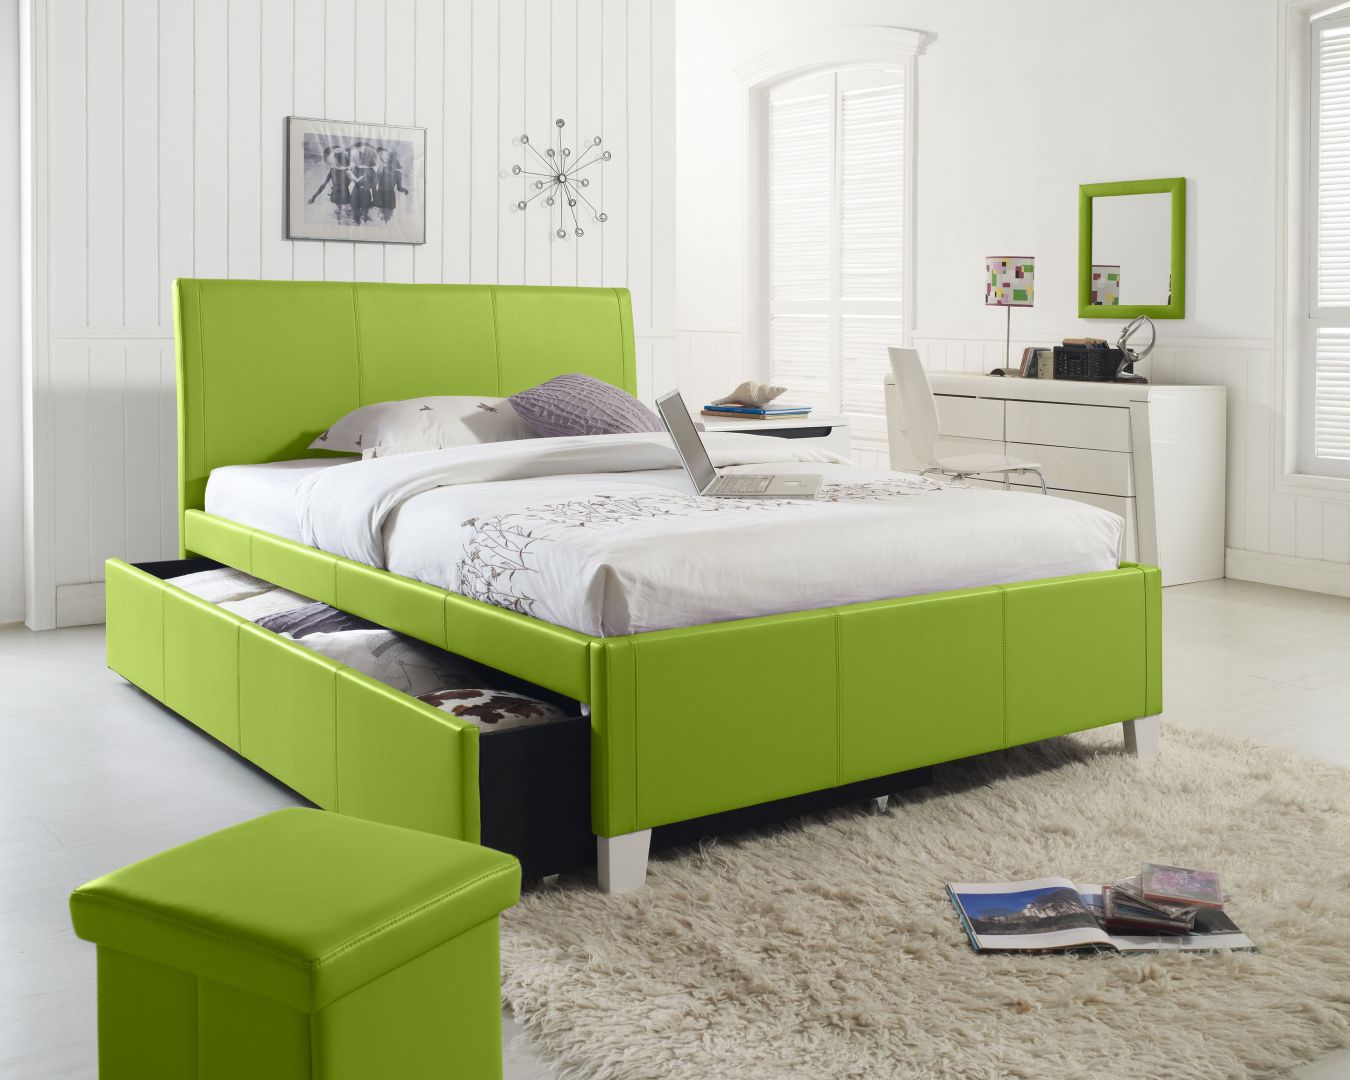 Soczysto-zielona rama łóżka ożywi każdą sypialnię. Fot.Evolt